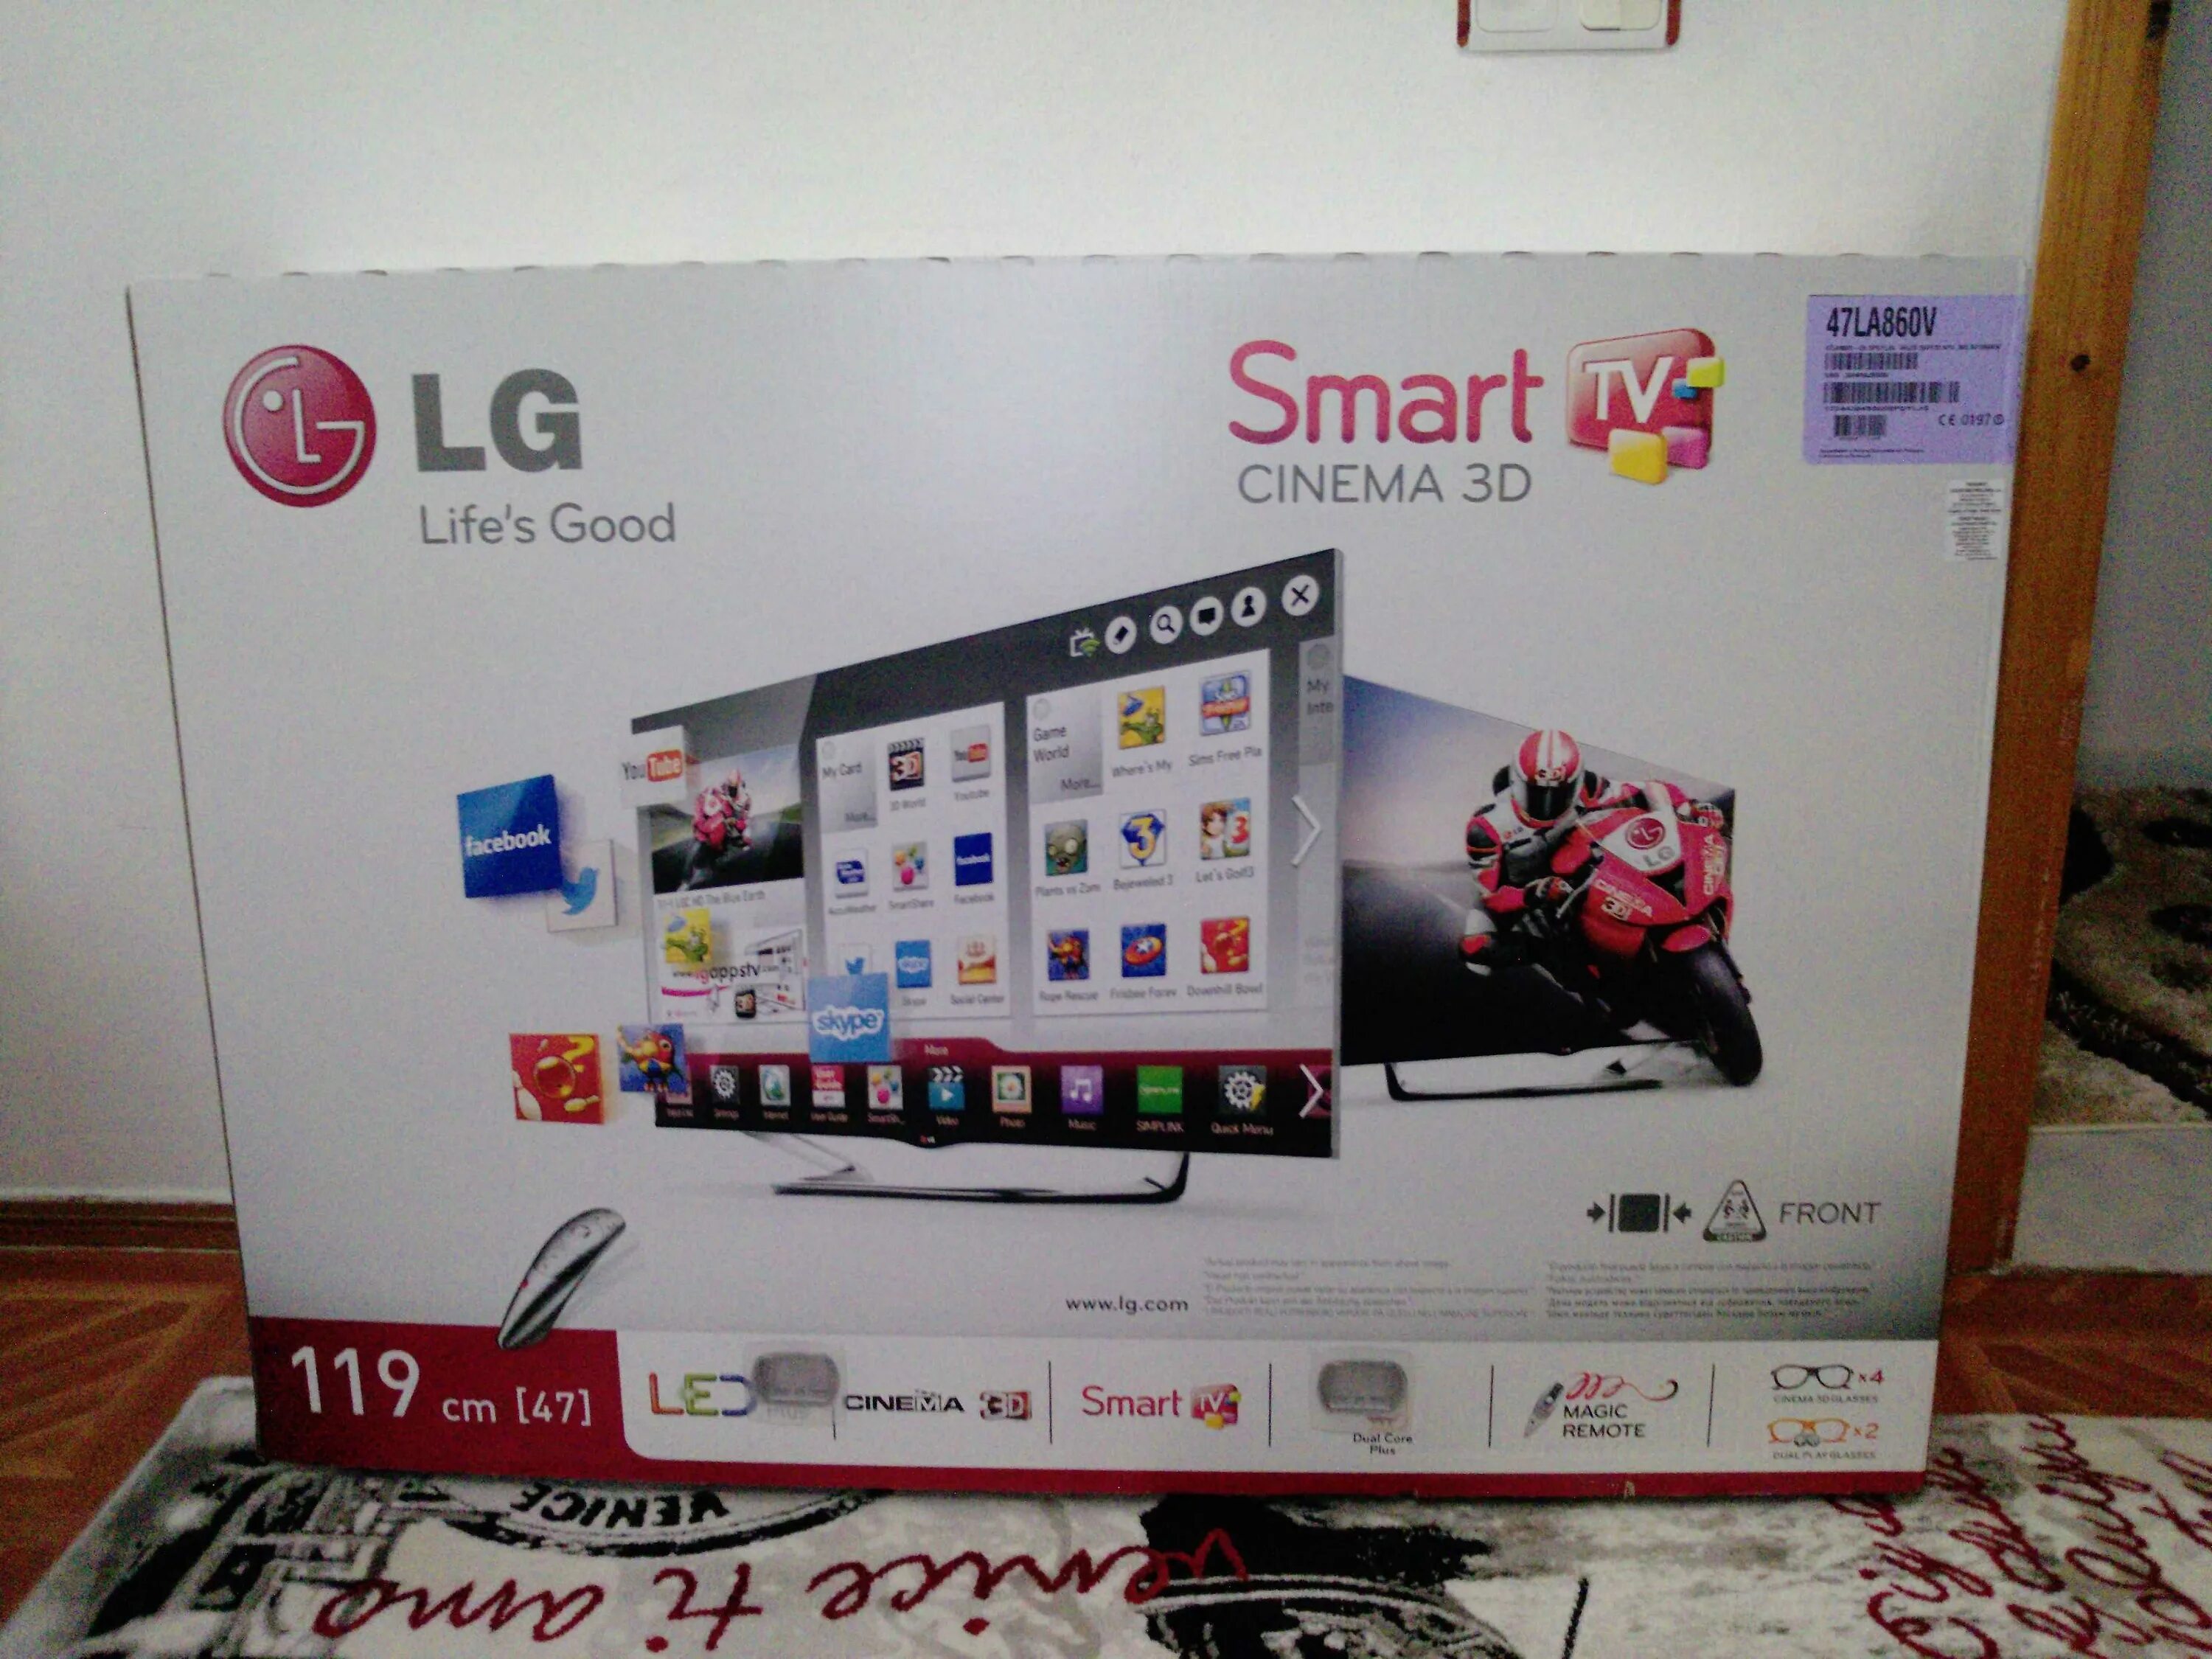 Телевизор LG 47la960v 47". LG Smart TV 2013 года. Телевизор LG 47la667v 47". Телевизор LG Smart TV 2013 года. Телевизор lg 2012